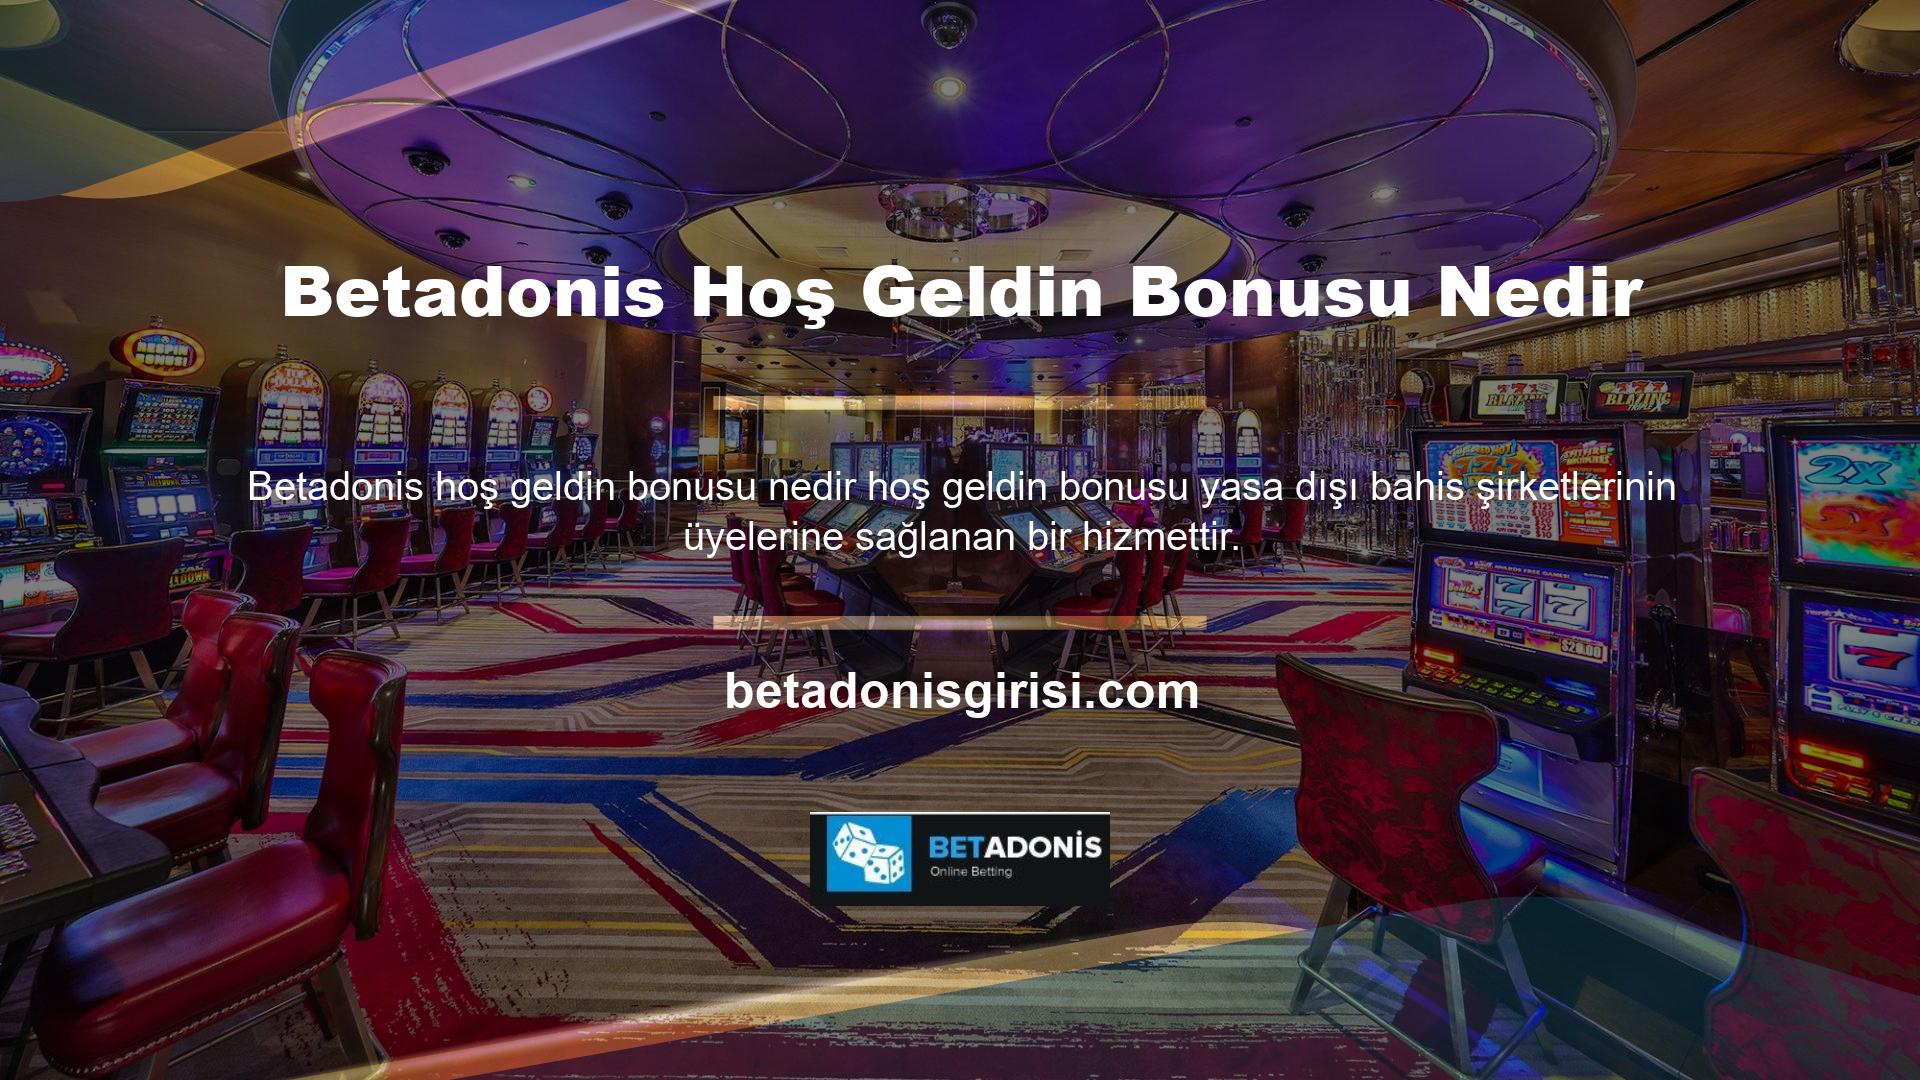 Yasa dışı casino siteleri, siteye erişimi iyileştirmek için üyelerine hoş geldin bonusları sunuyor